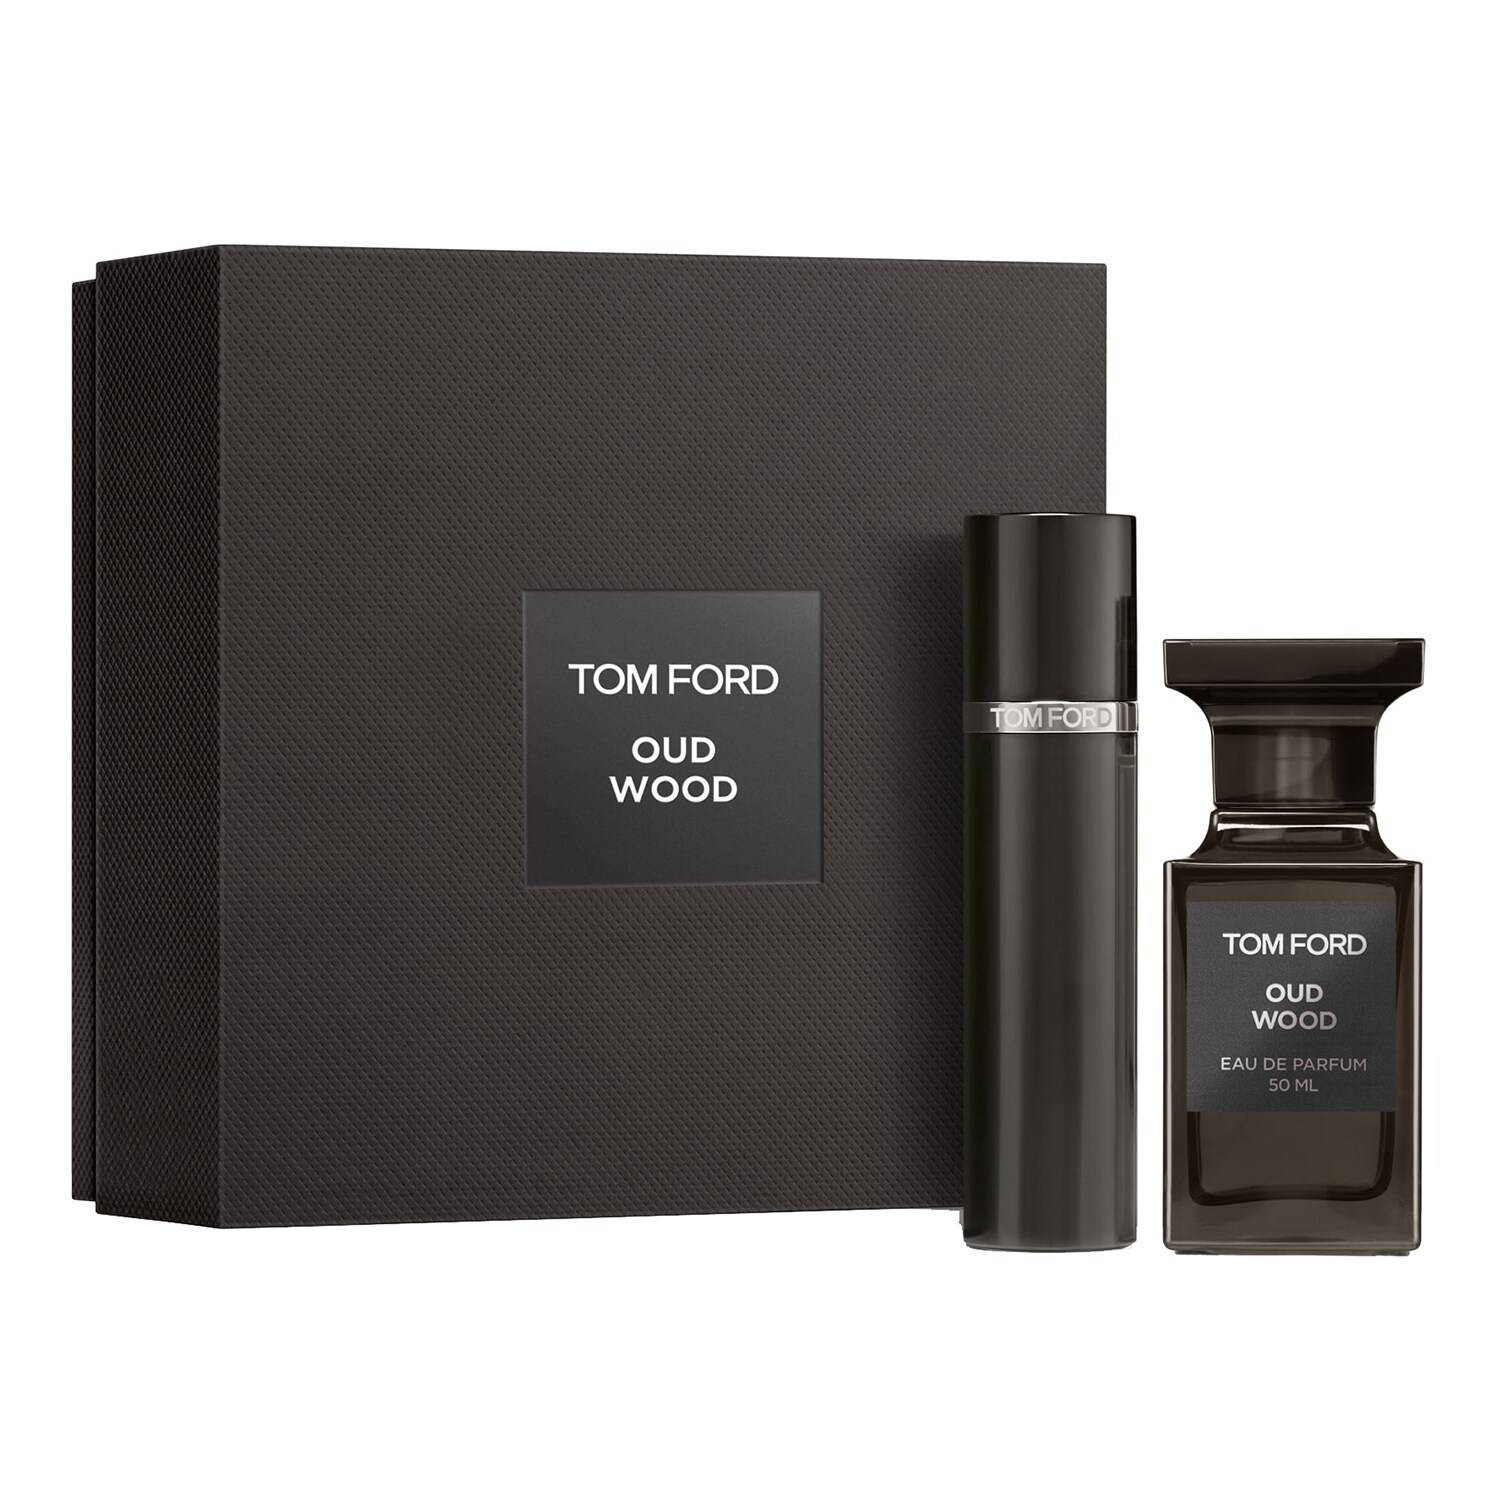 TOM FORD Oud Wood Eau de Parfum Gift Set | FEELUNIQUE